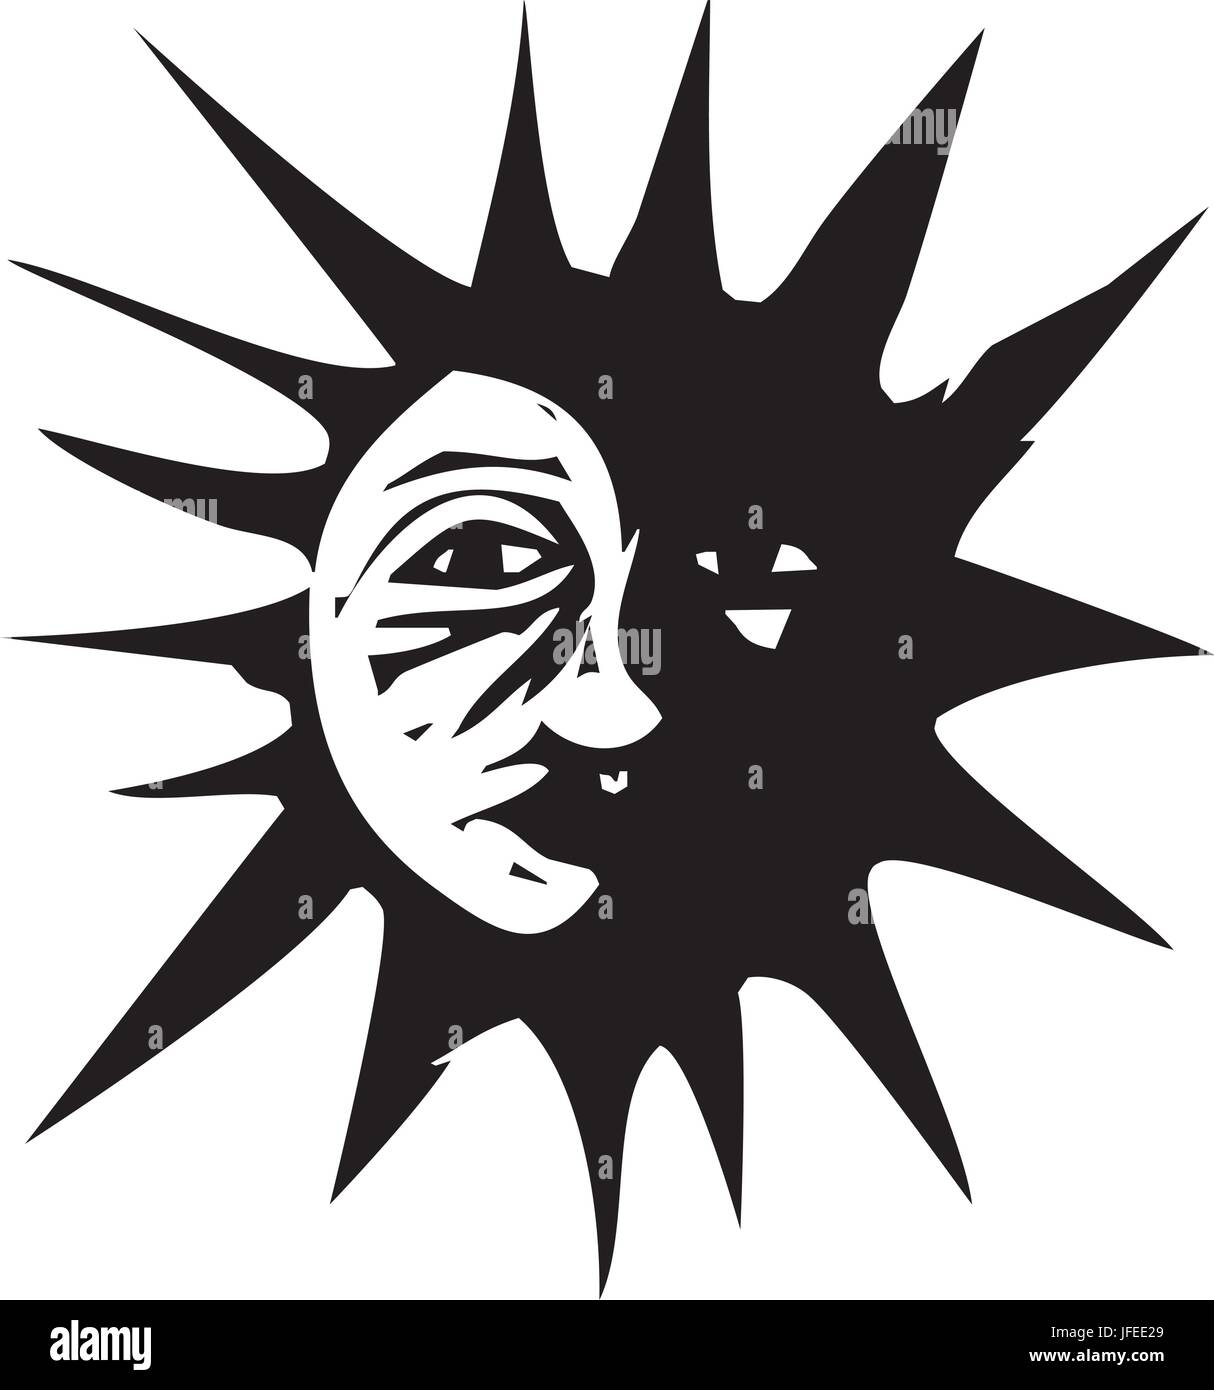 Holzschnitt-Stil Bild der Sonne in Eclipse vom Mond. Stock Vektor